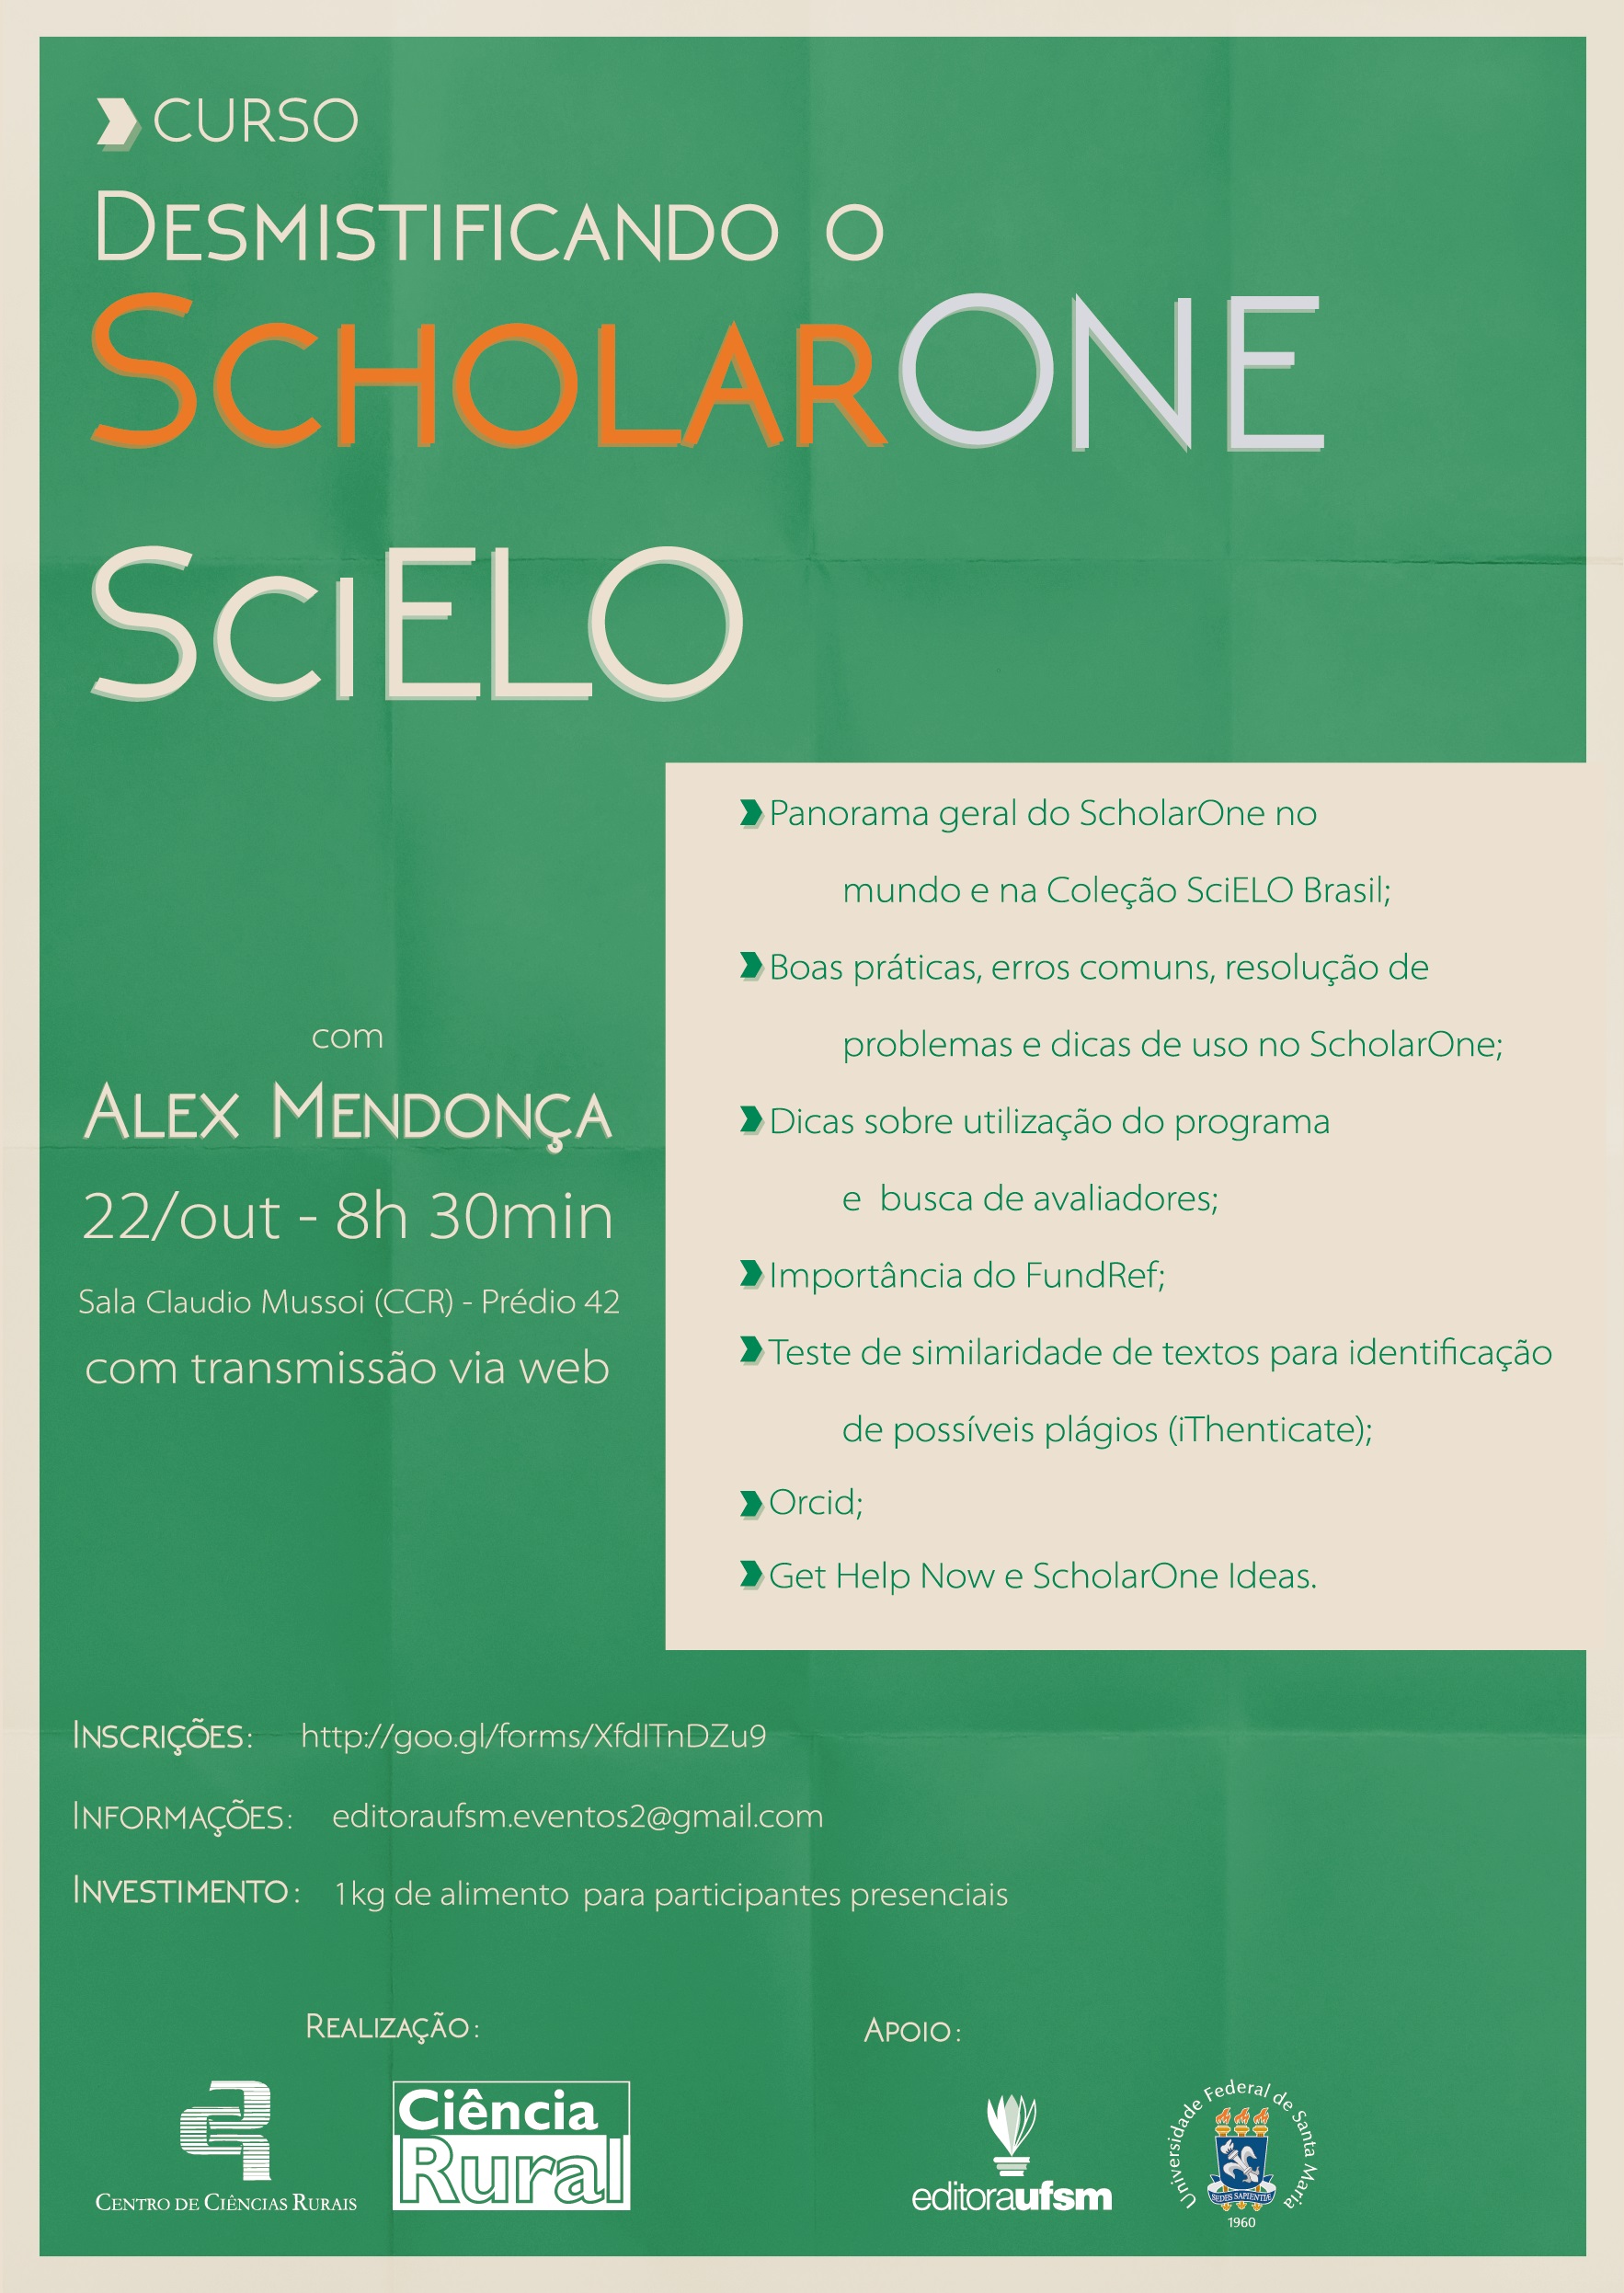 ScholarOne SciELO 1 1 1